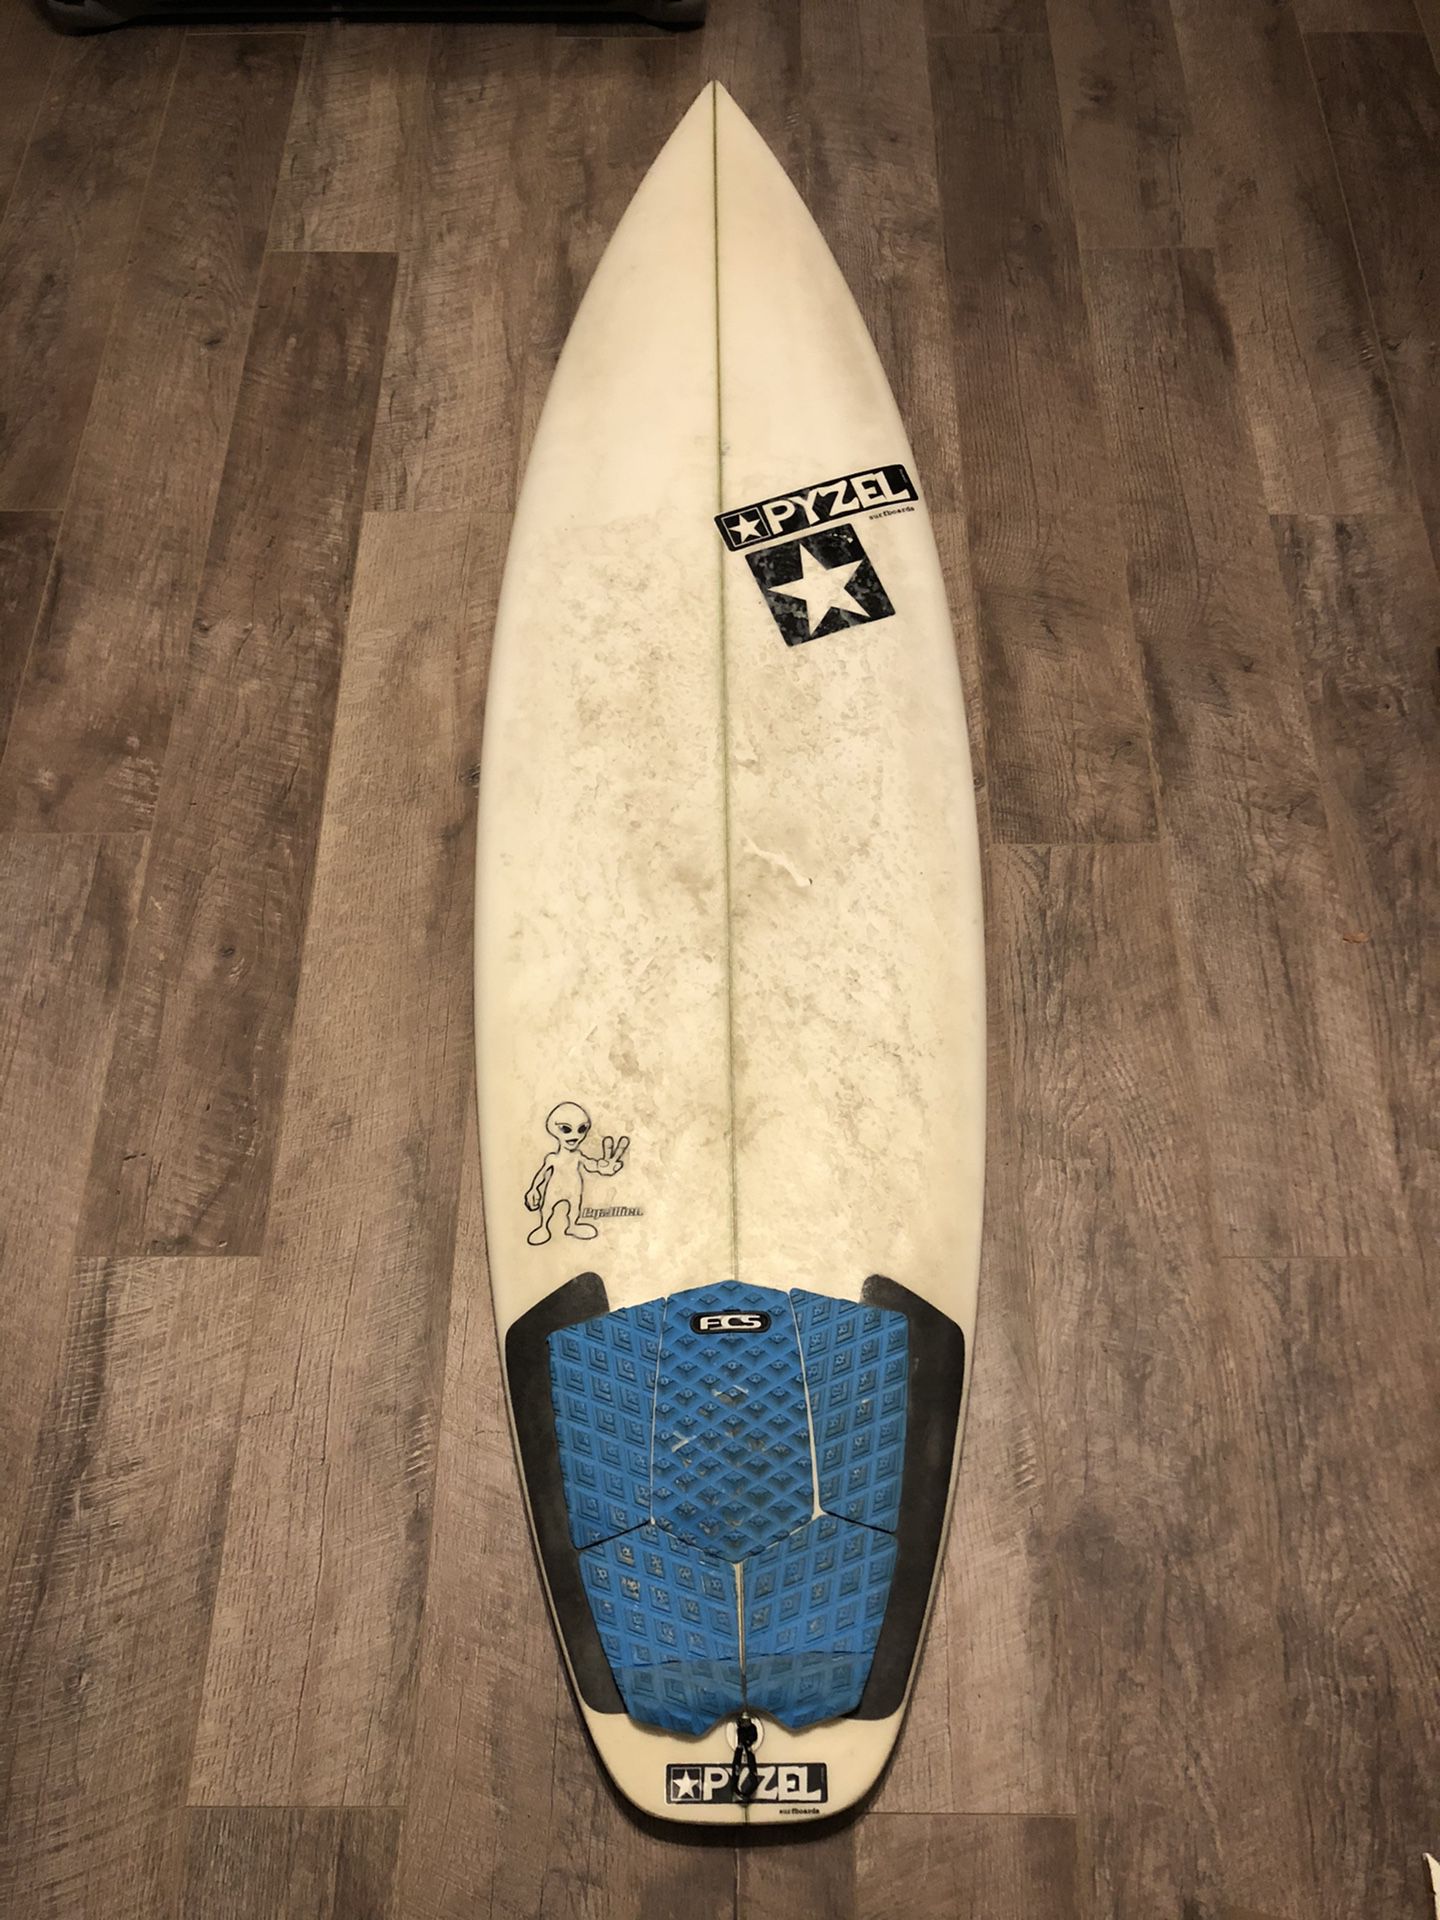 Pyzel pyzalien surfboard